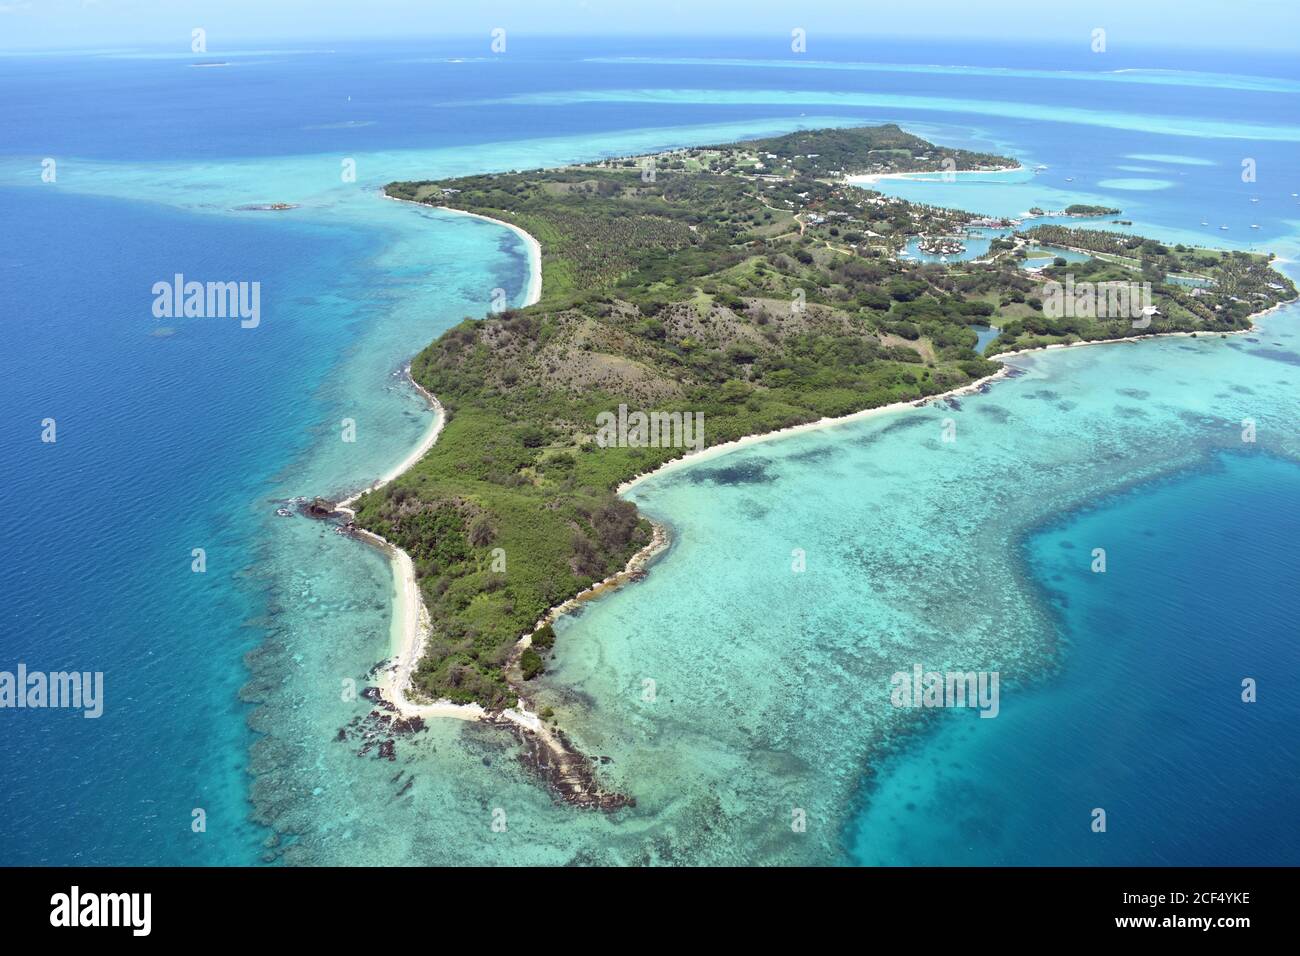 Îles Malolo Lailai vues d'en haut dans le Pacifique Sud, Fidji. L'île est entourée de récifs coralliens et d'eau turquoise à bleu profond. Banque D'Images